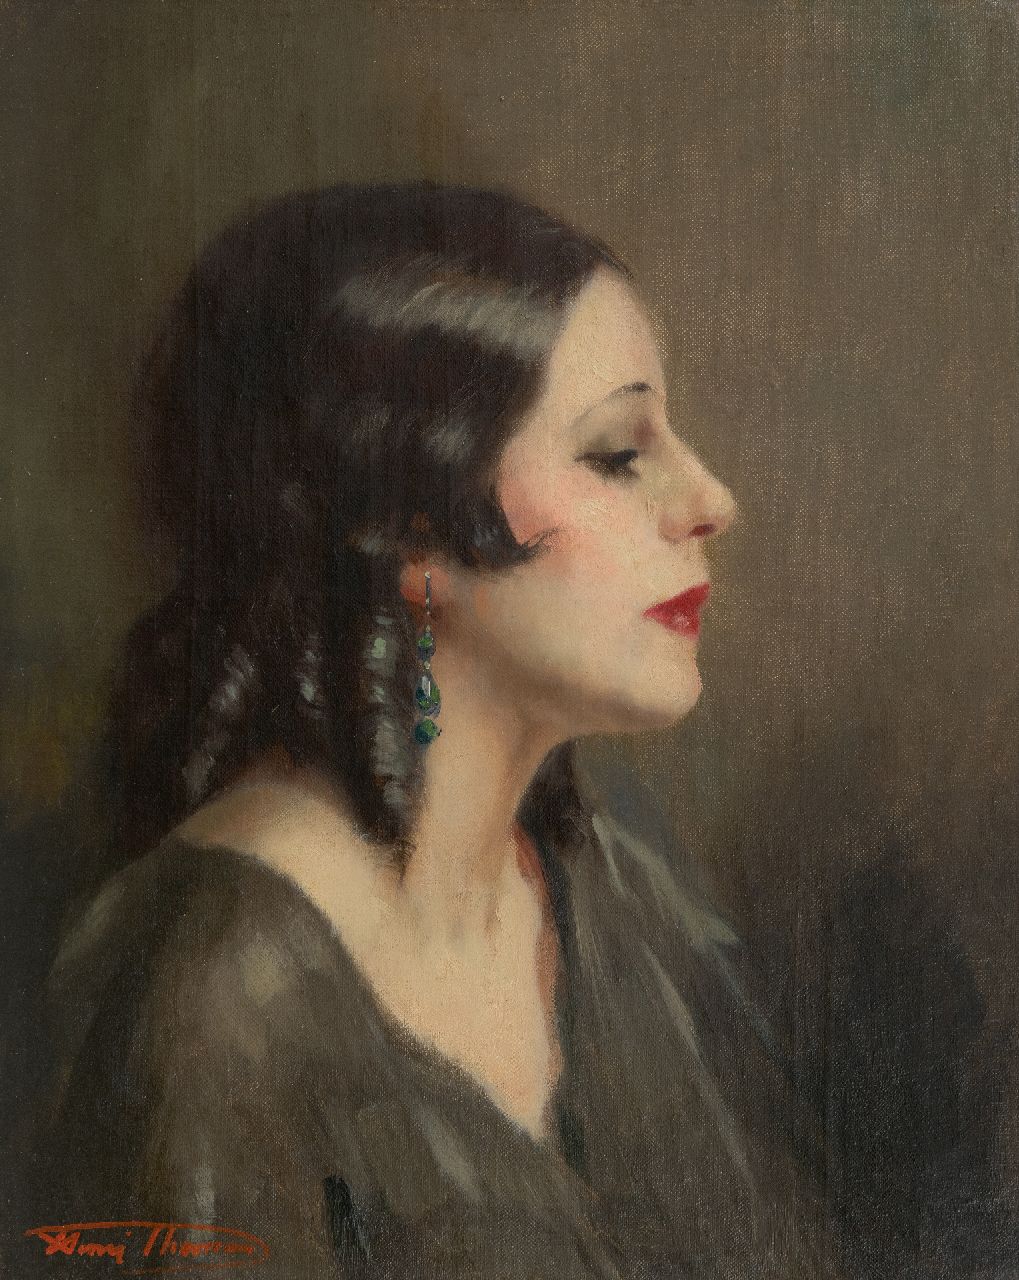 Thomas H.J.  | Henri Joseph Thomas | Schilderijen te koop aangeboden | Portret van een vrouw, en profil, olieverf op doek 50,3 x 40,4 cm, gesigneerd linksonder